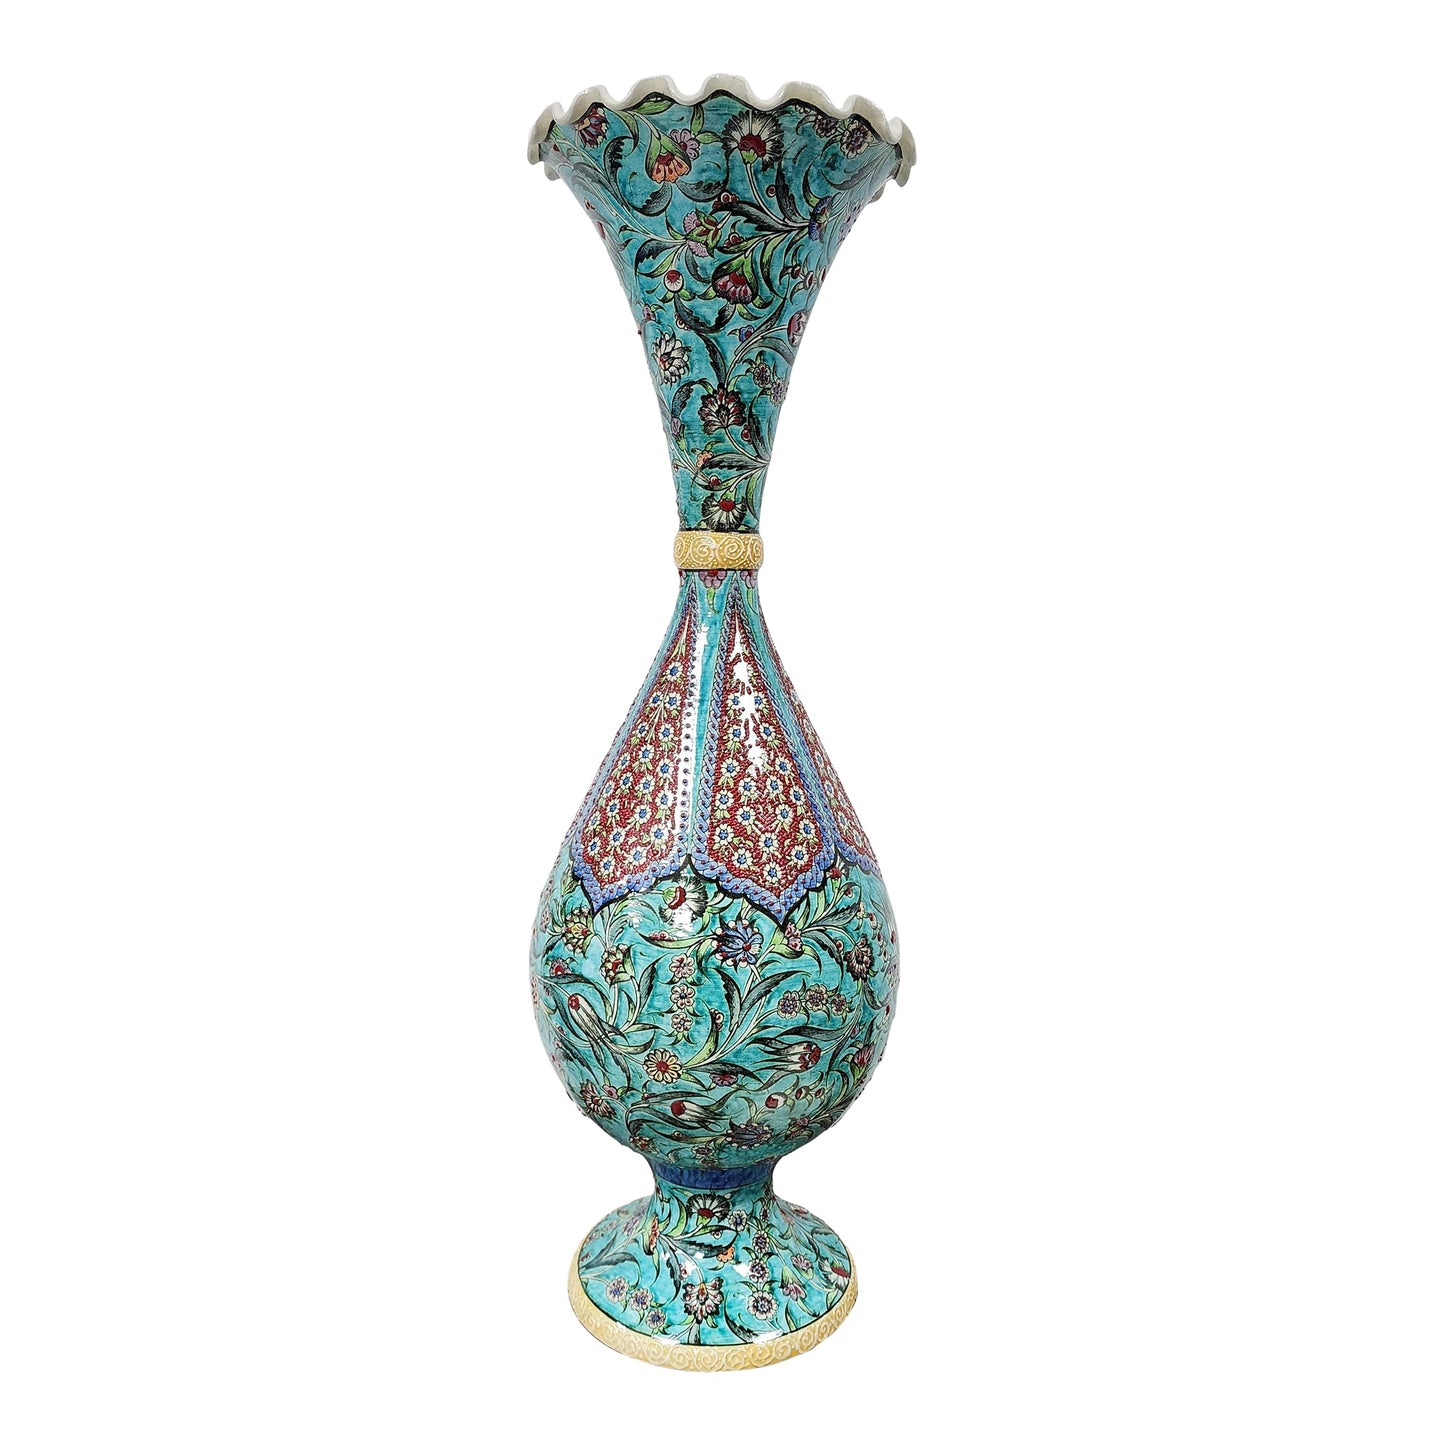 Floral aquamarine design on ceramic vase